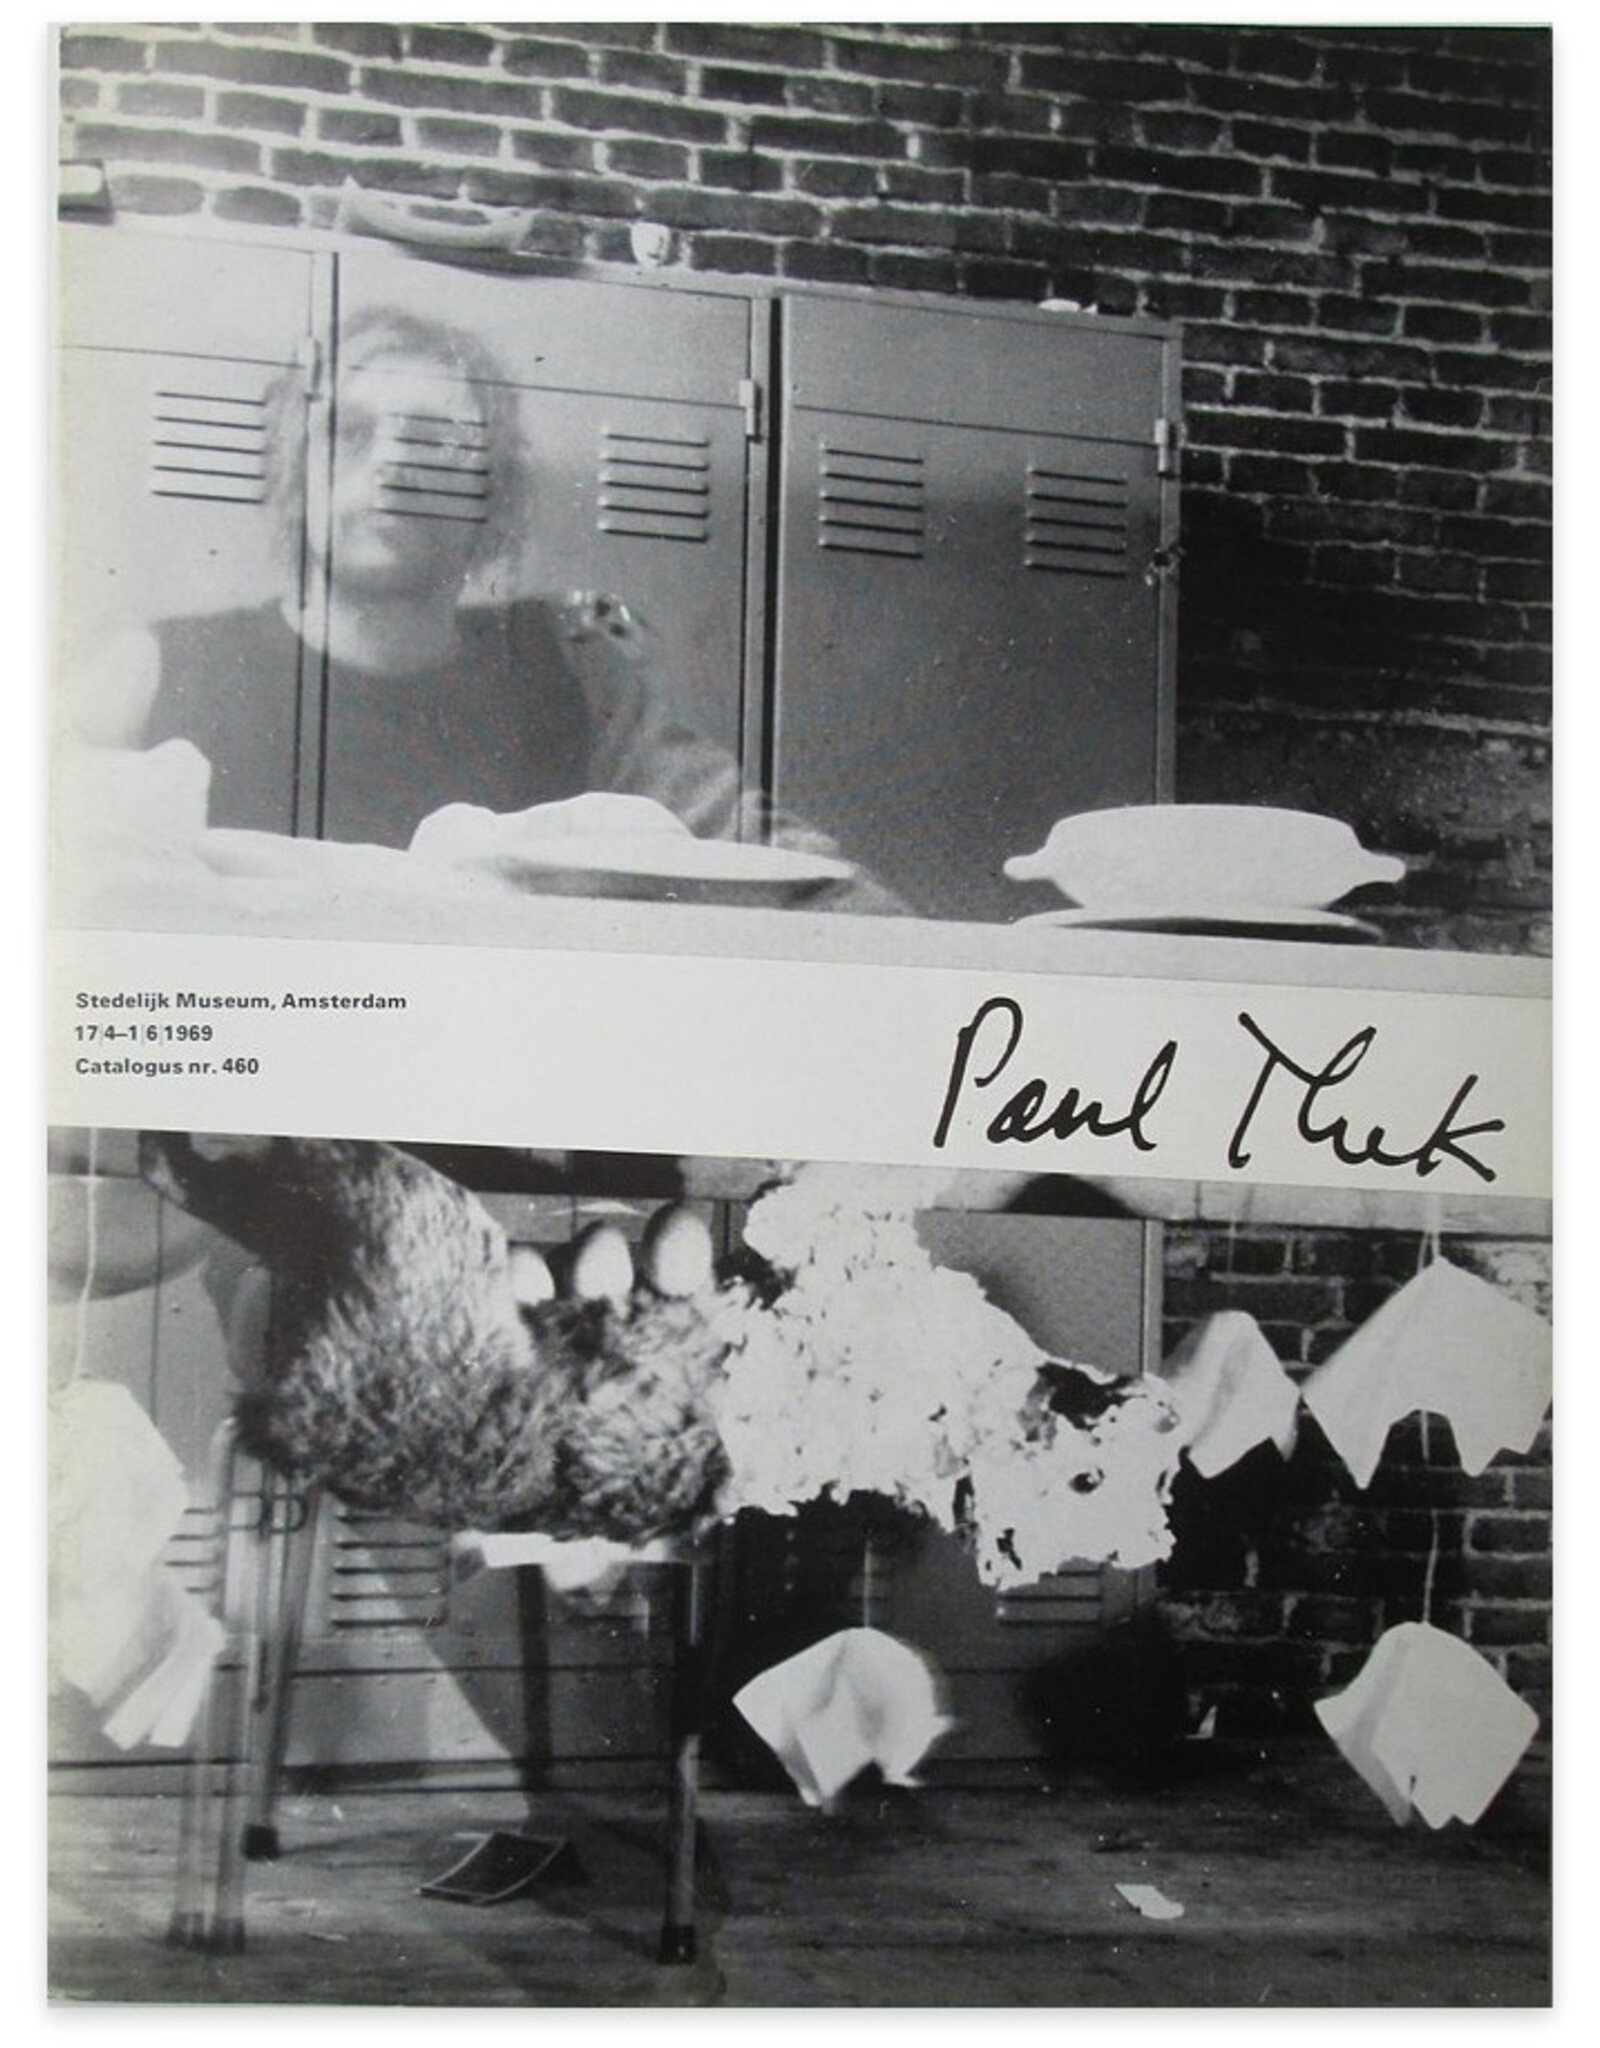 Paul Thek - Paul Thek: 17/4 - 1/6/1969